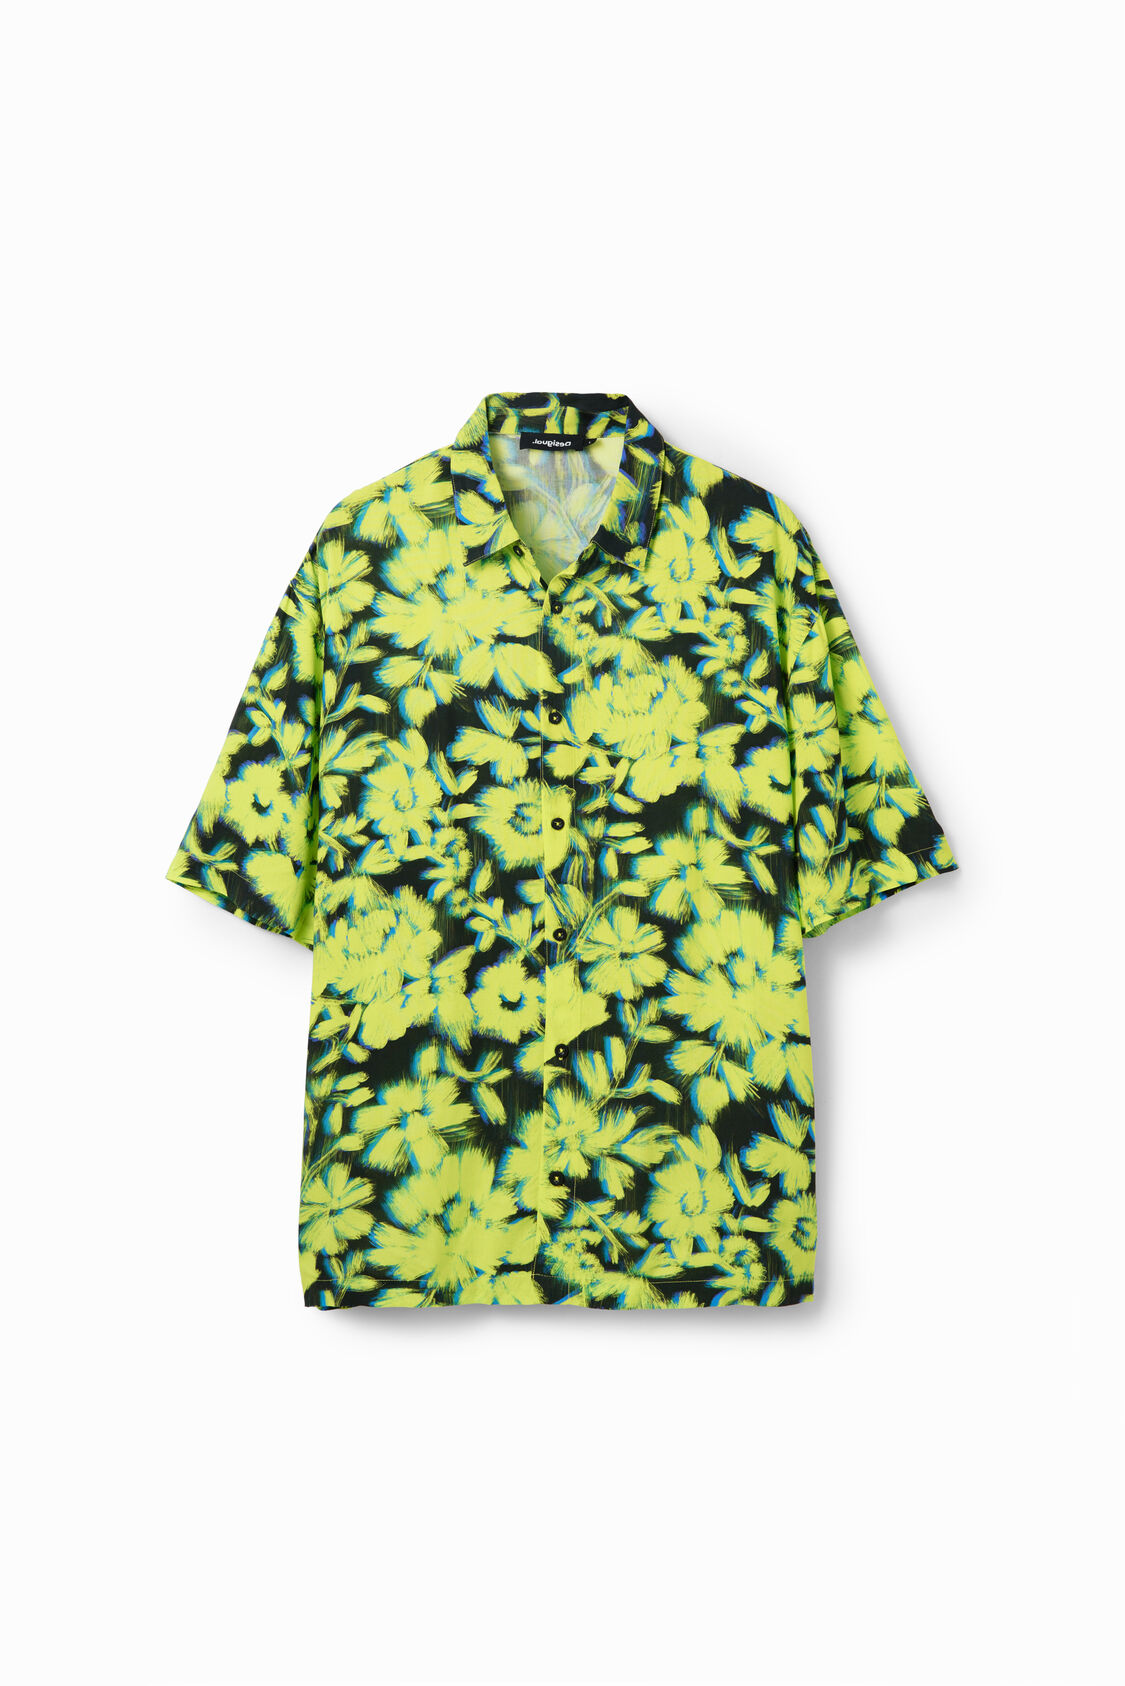 hoek zoeken Lotsbestemming Resort shirt met bloemen voor heren | Desigual.com